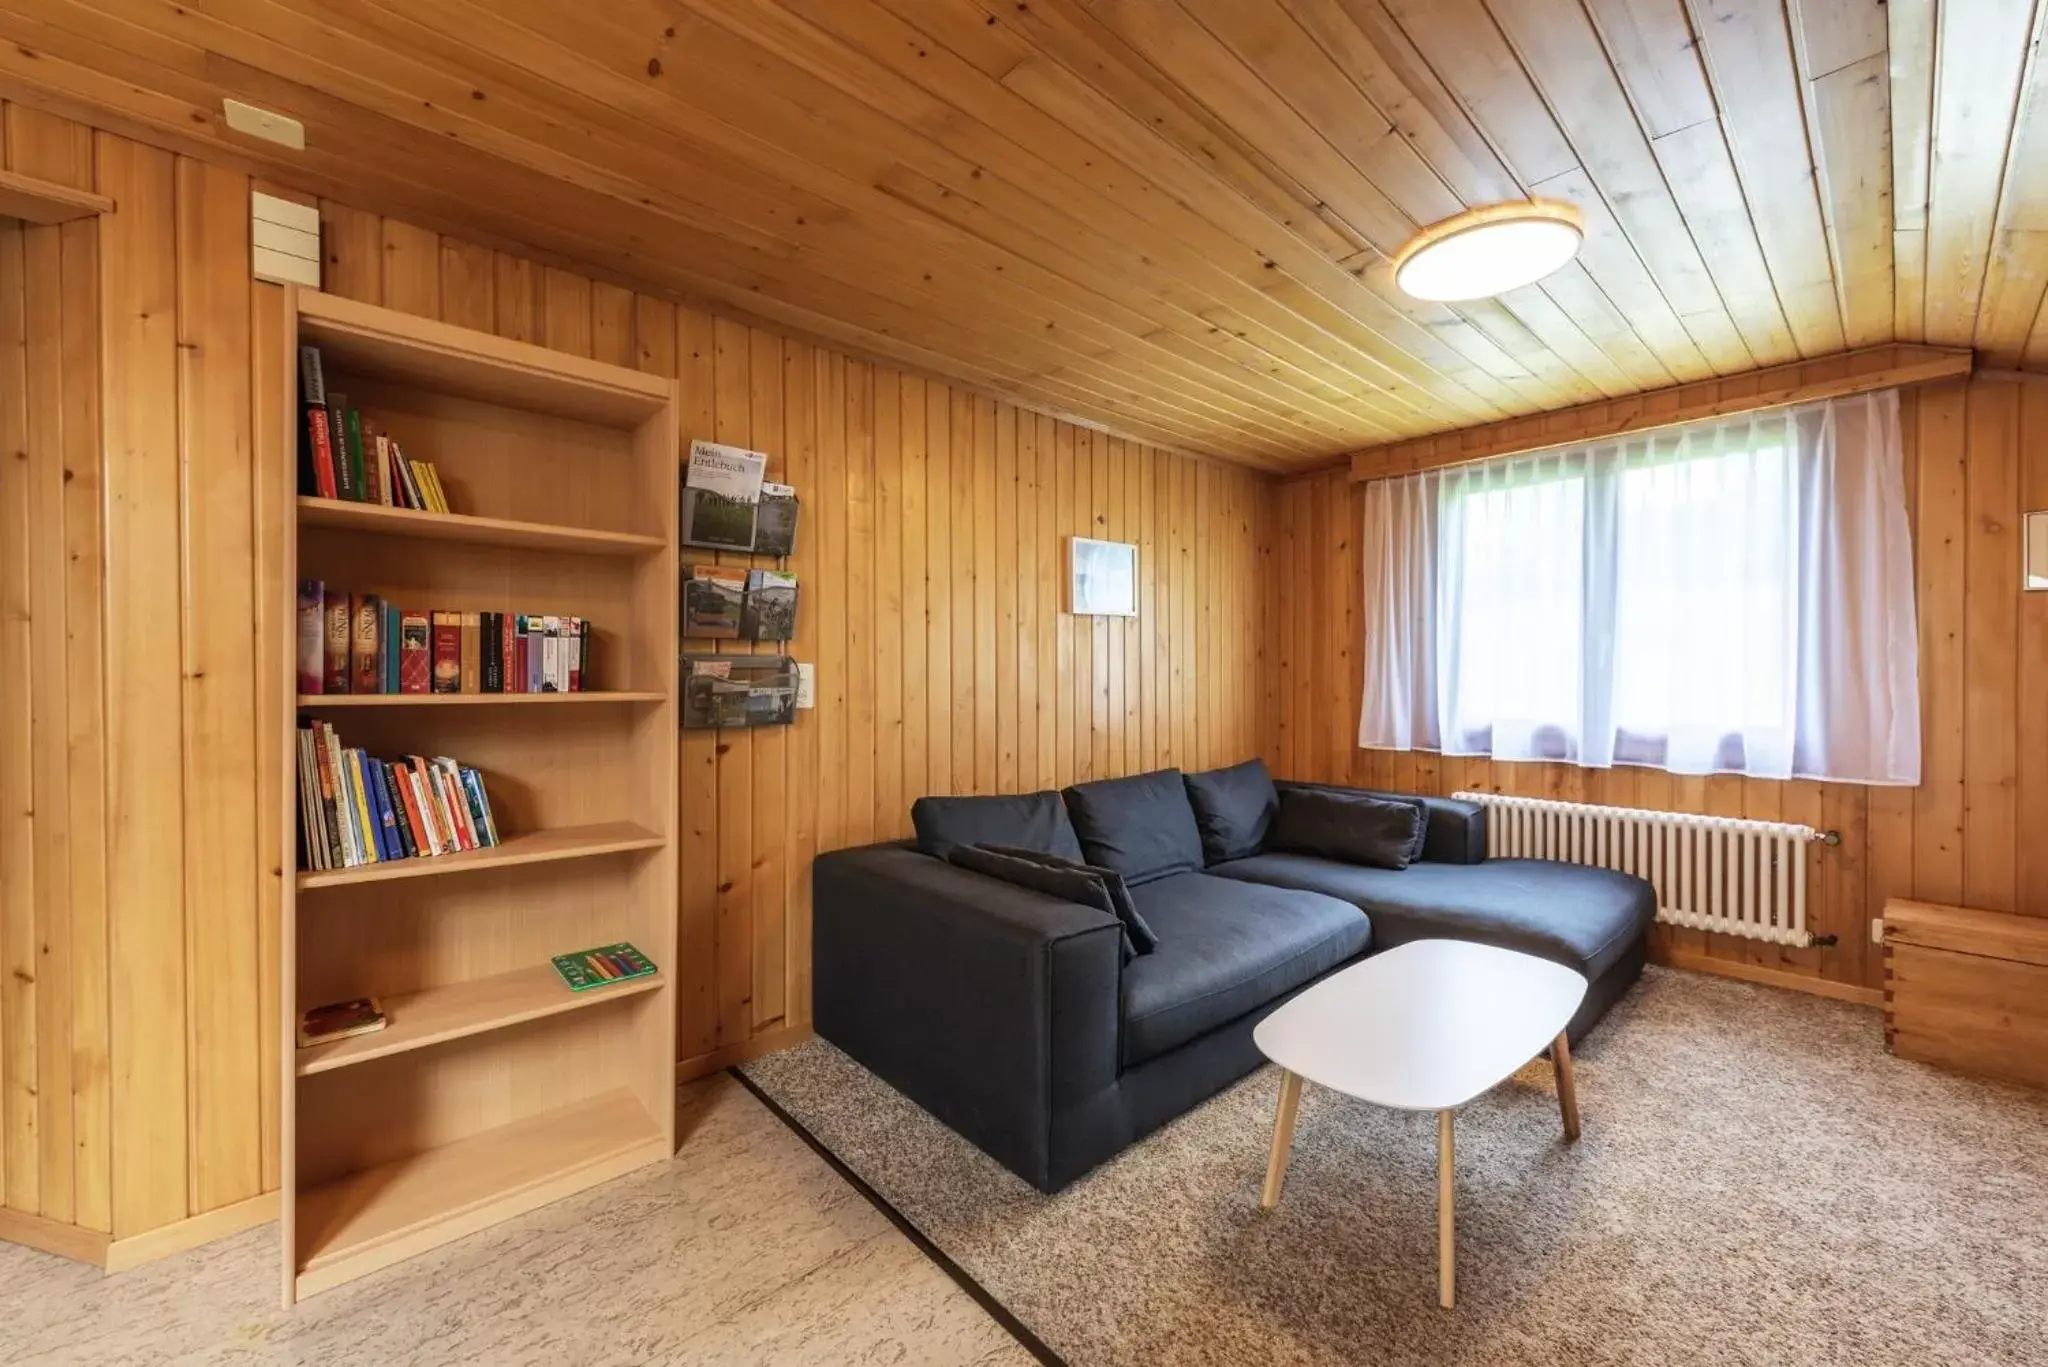 Living room, Library in B&B Hof Grosschreie